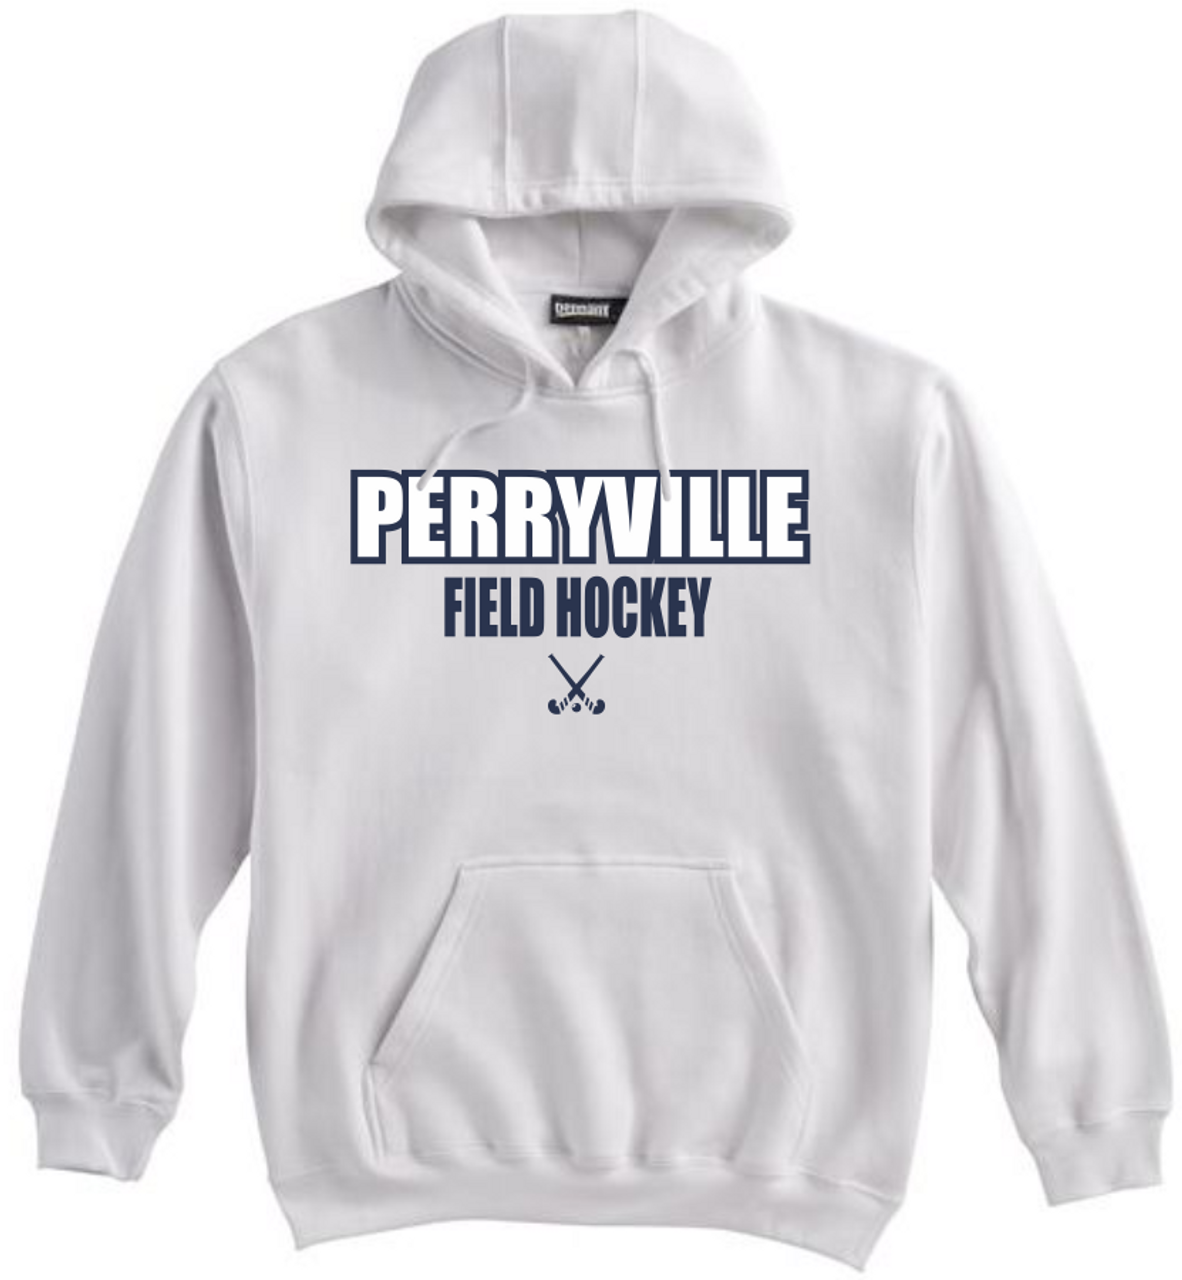 Perryville Field Hockey Hoodie, White